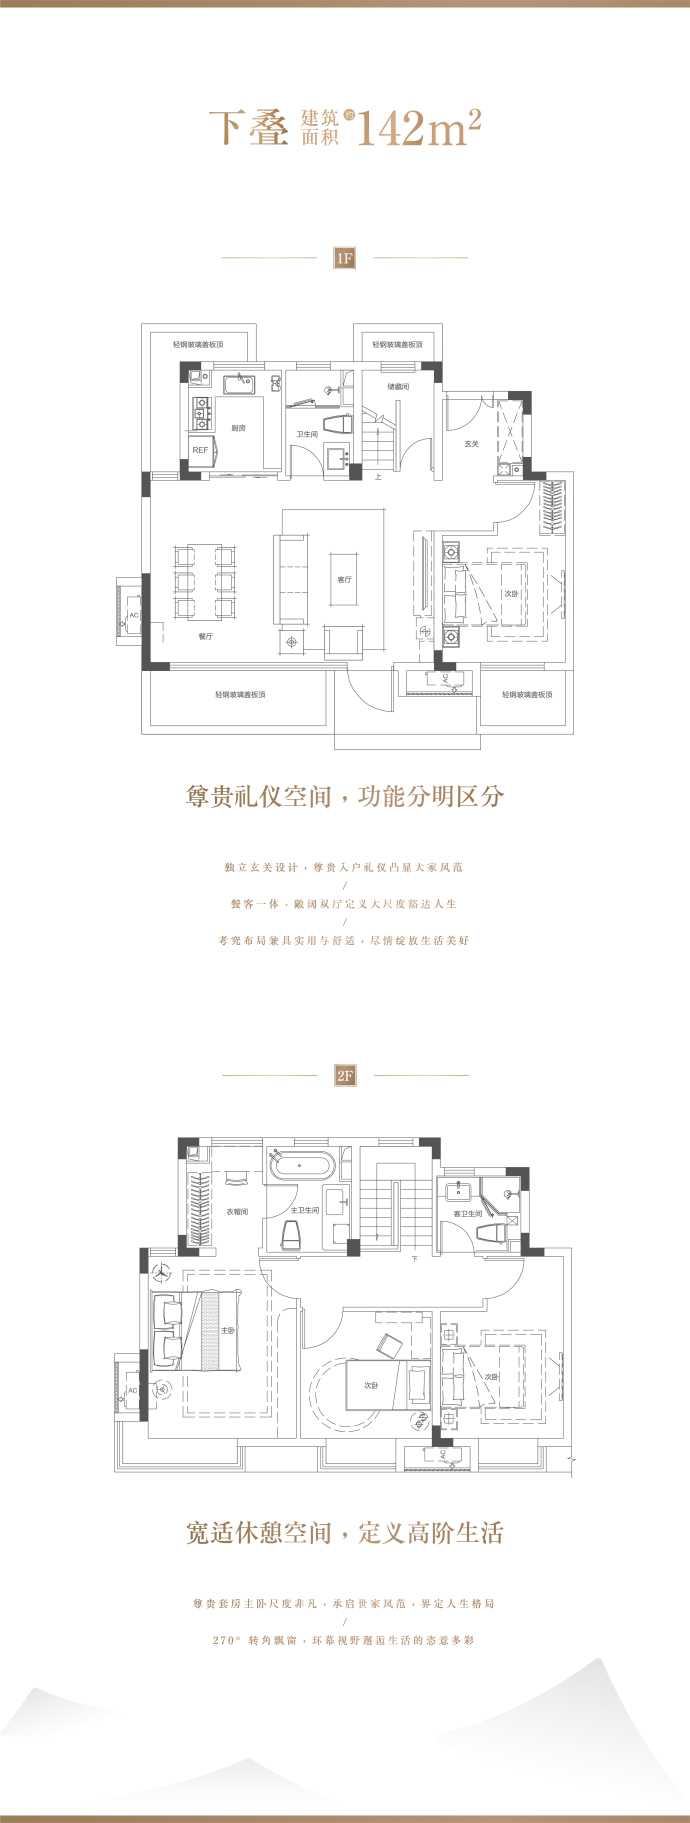 宜昌城市旅游客厅--建面 142m²